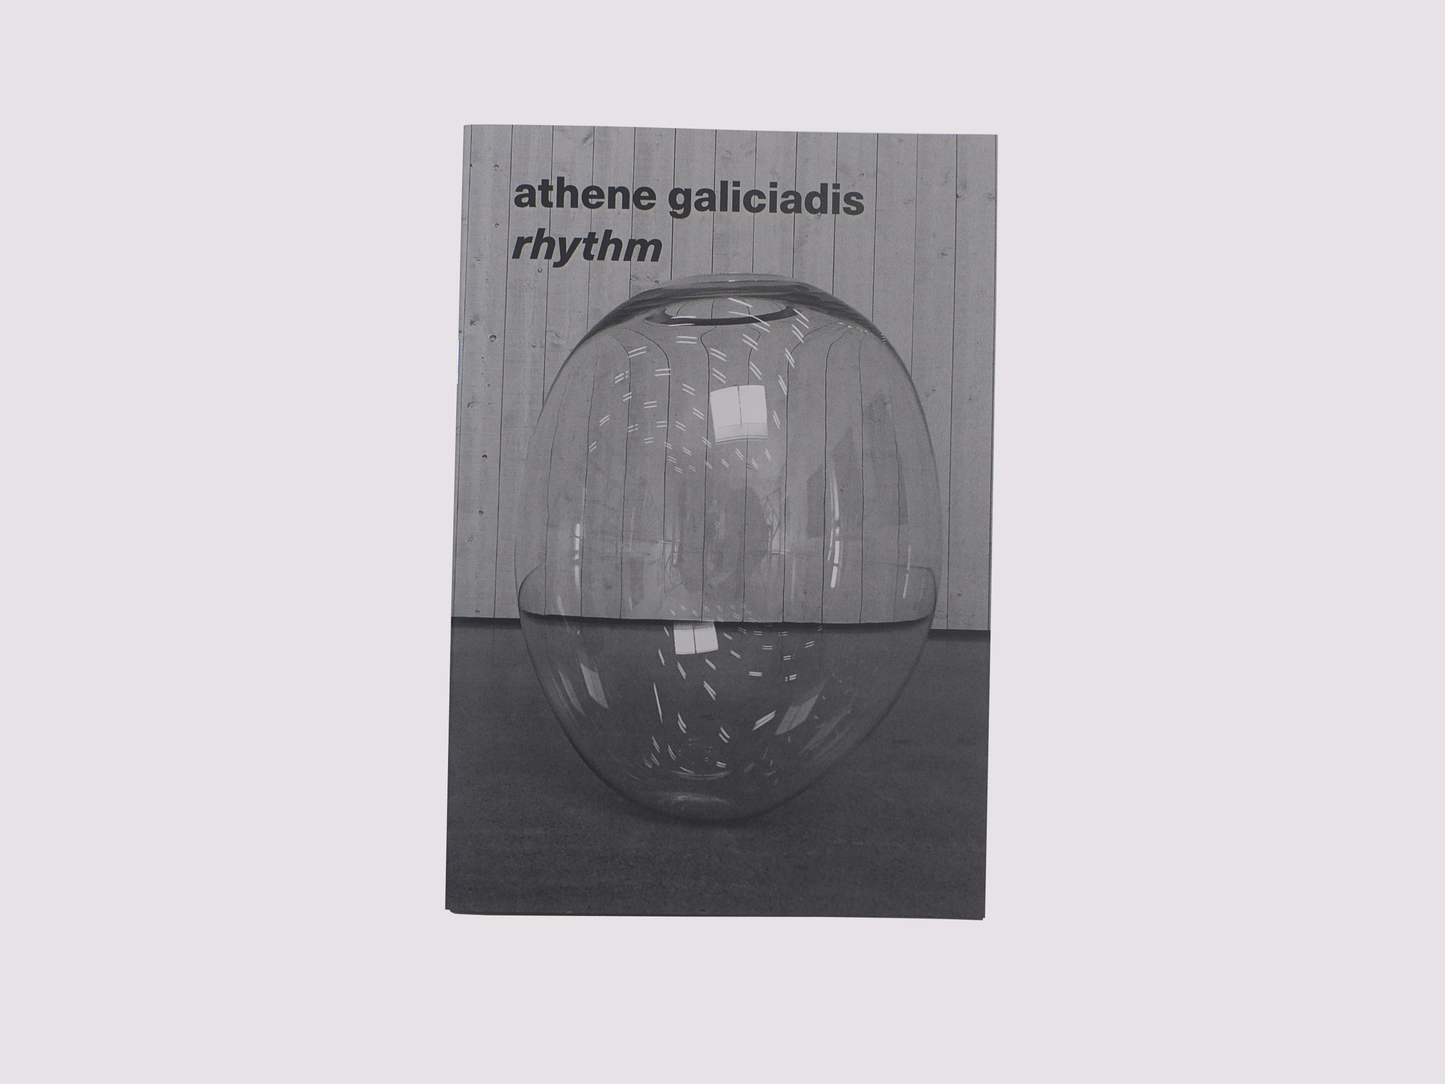 Rhythm/Athene Galiciadis published by Innen